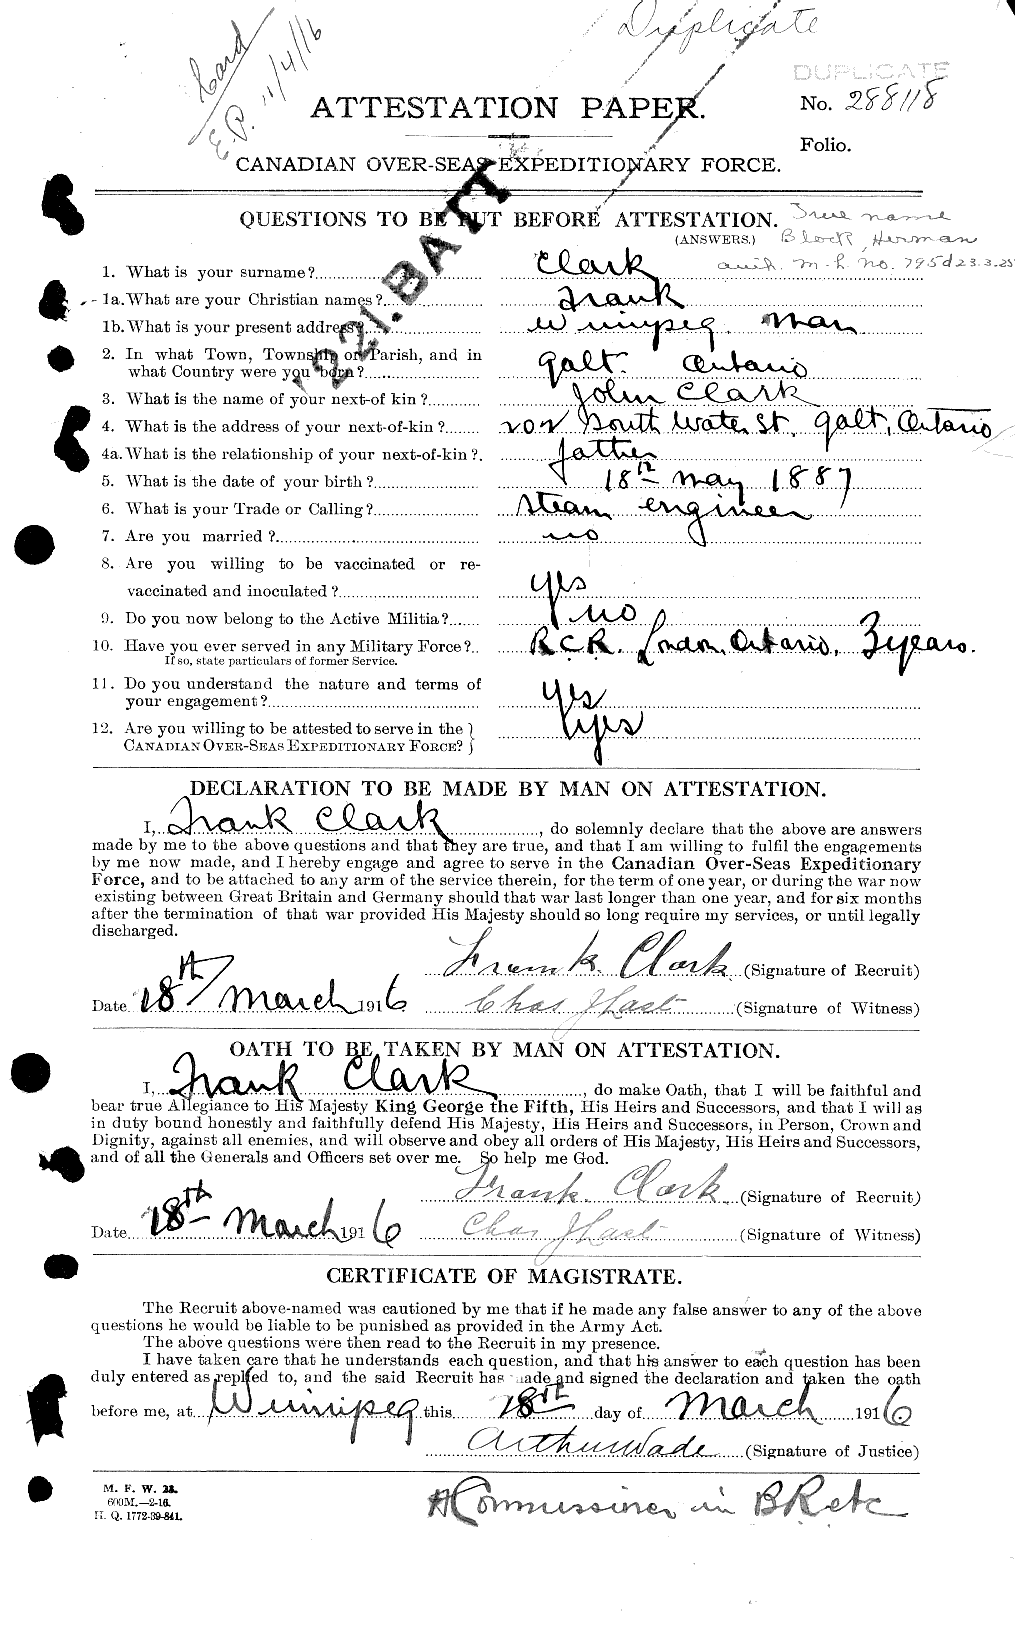 Dossiers du Personnel de la Première Guerre mondiale - CEC 024288a